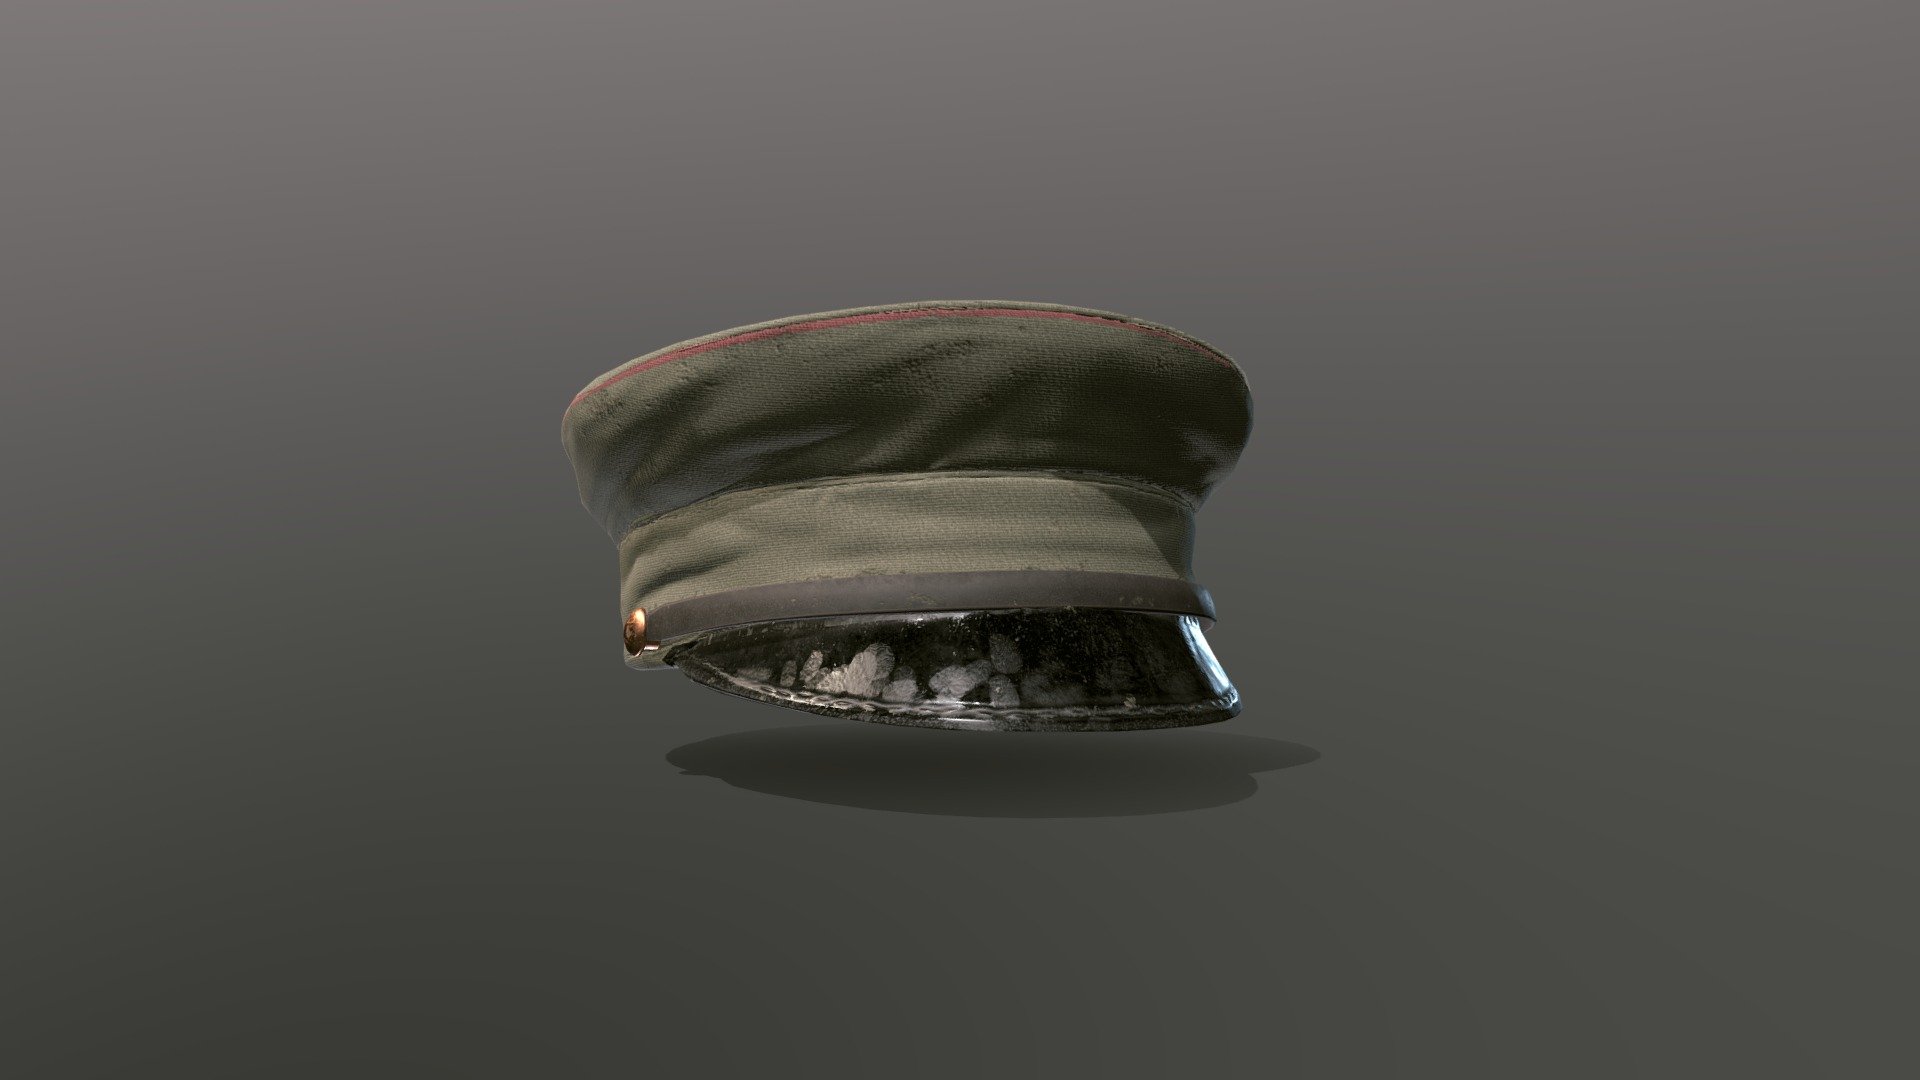 An Old Soviet Commanders Hat - Soviet Hat - 3D model by cosmoporter 3d model